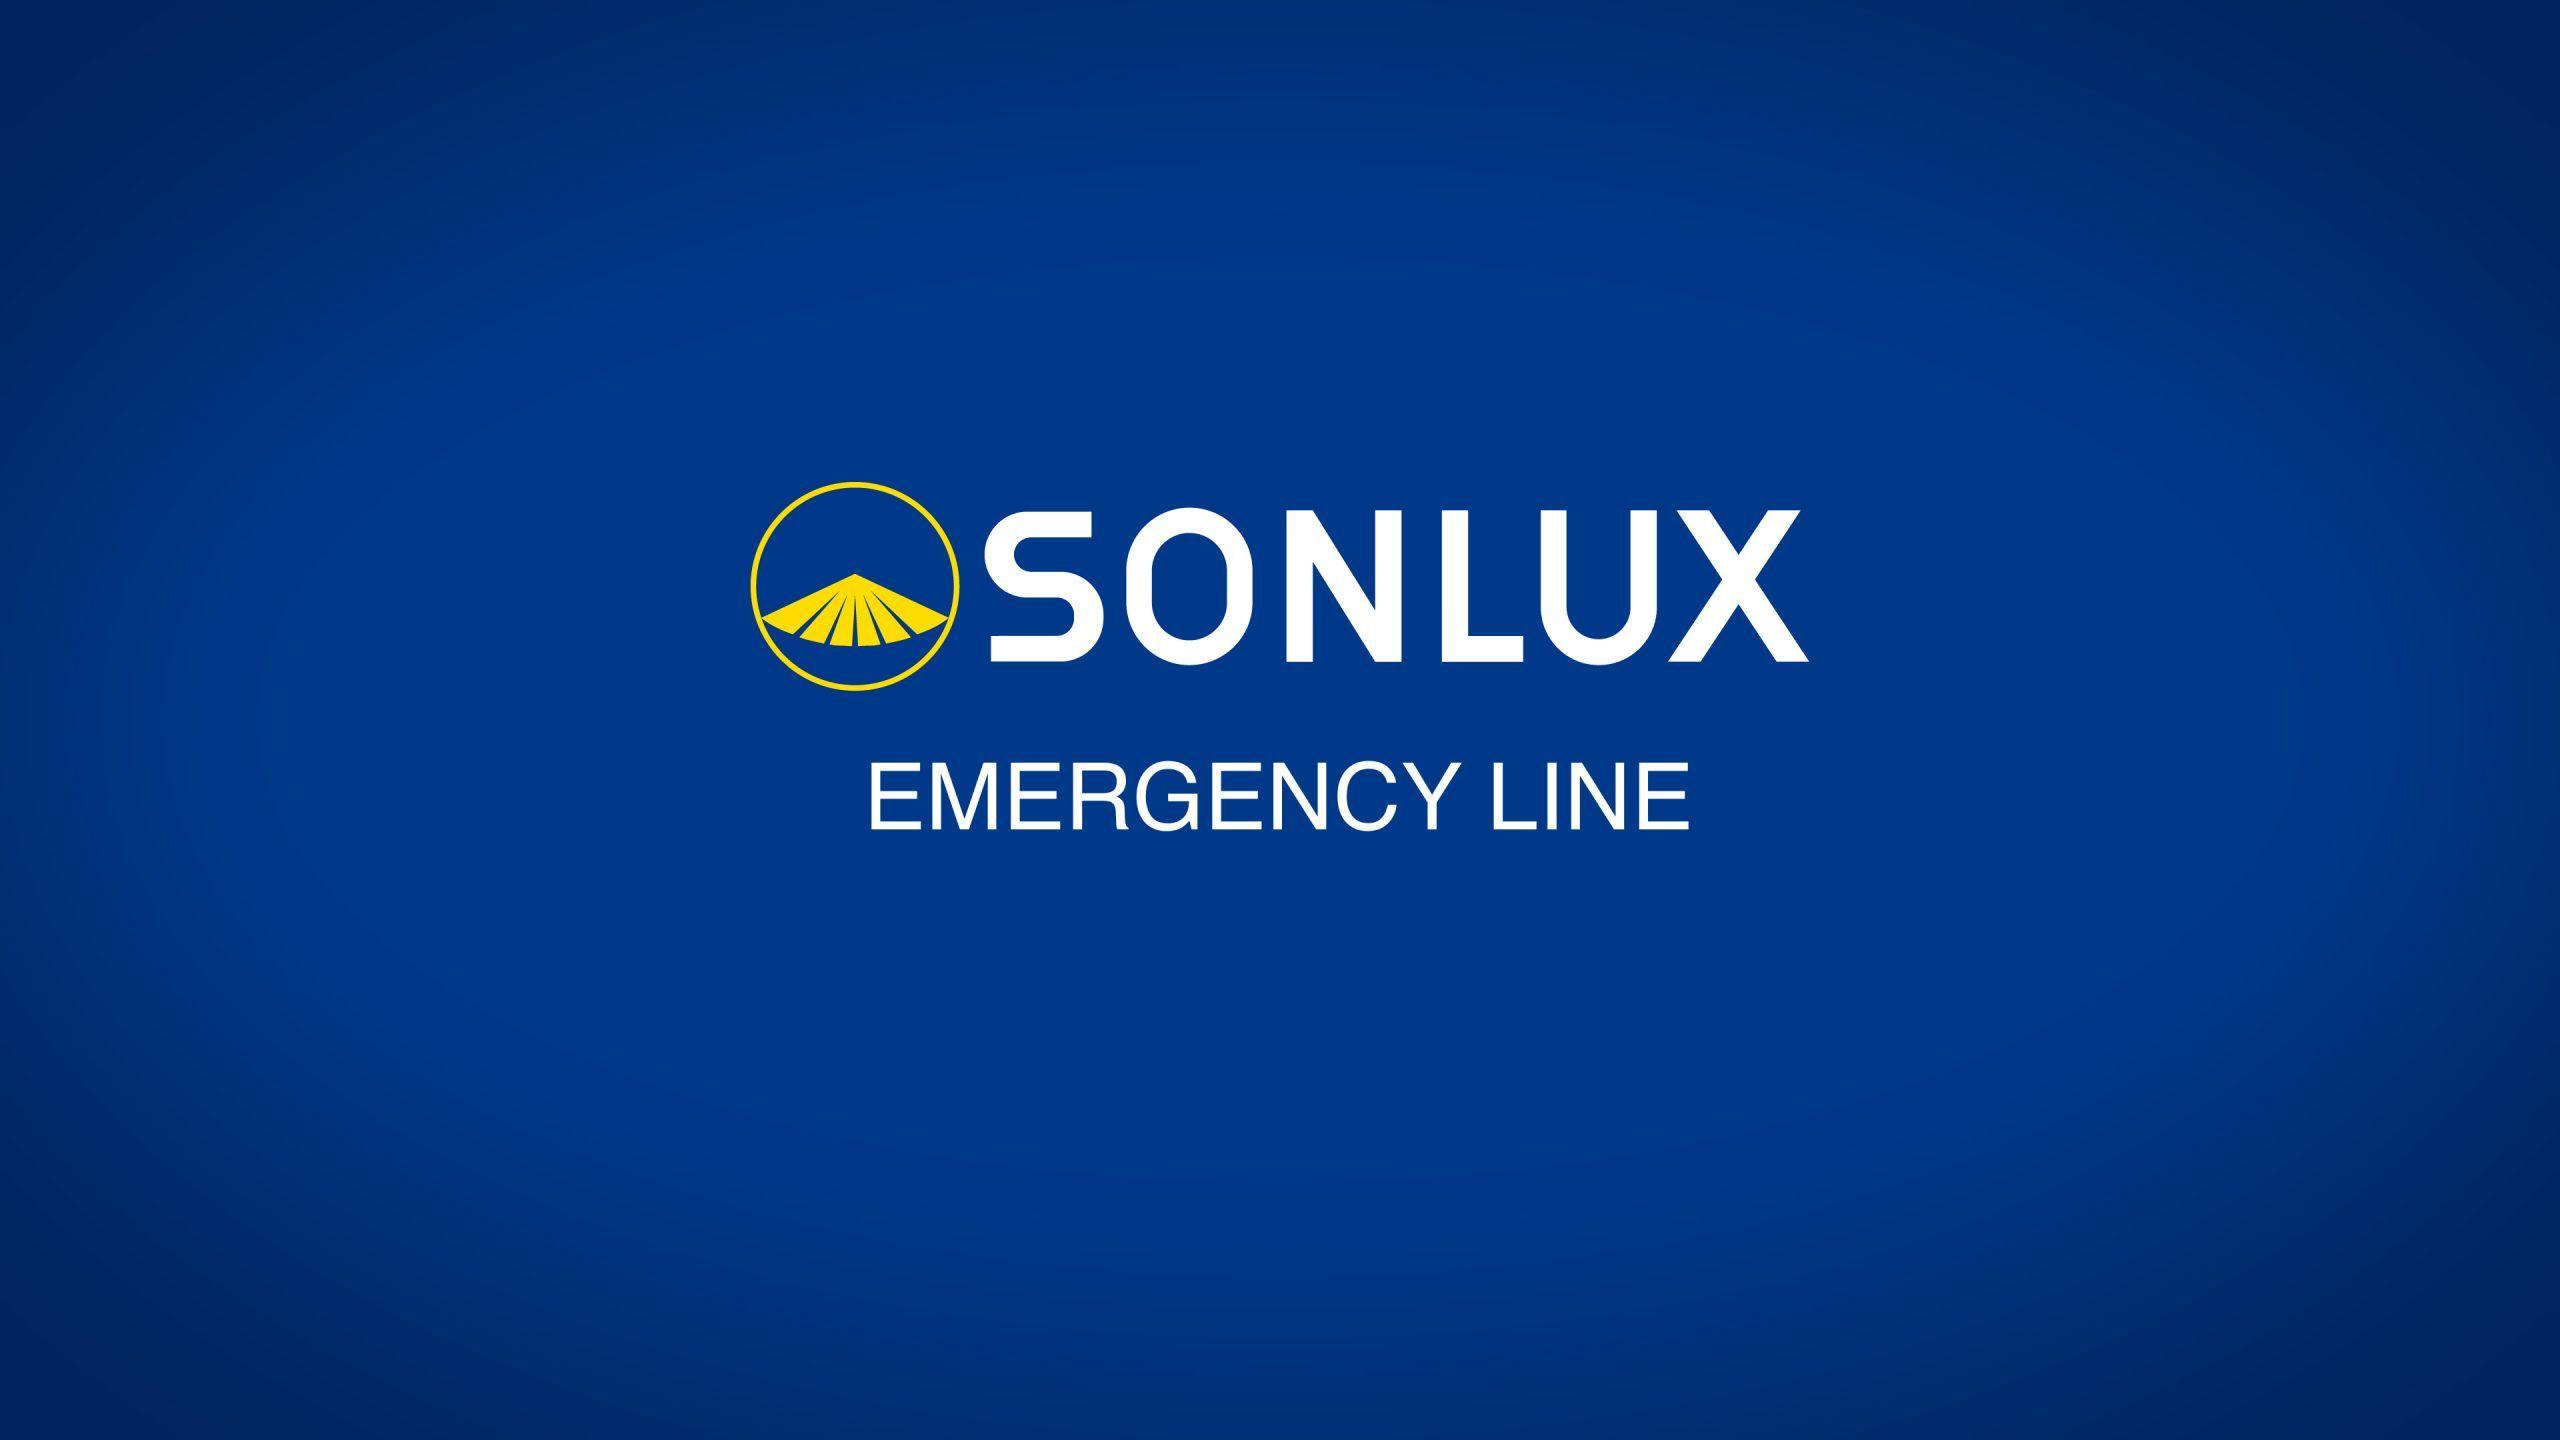 Das Deutsche Unternehmen SONLUX Lighting GmbH ist mit unter ein OEM Hersteller für viele bekannte Leuchtenhersteller, die sogenannte „Emergancy Line“  deckt besonders die hohen Ansprüche der Rettungskräfte, Spezialeinheiten bis hin zum Katastrophenschutz.